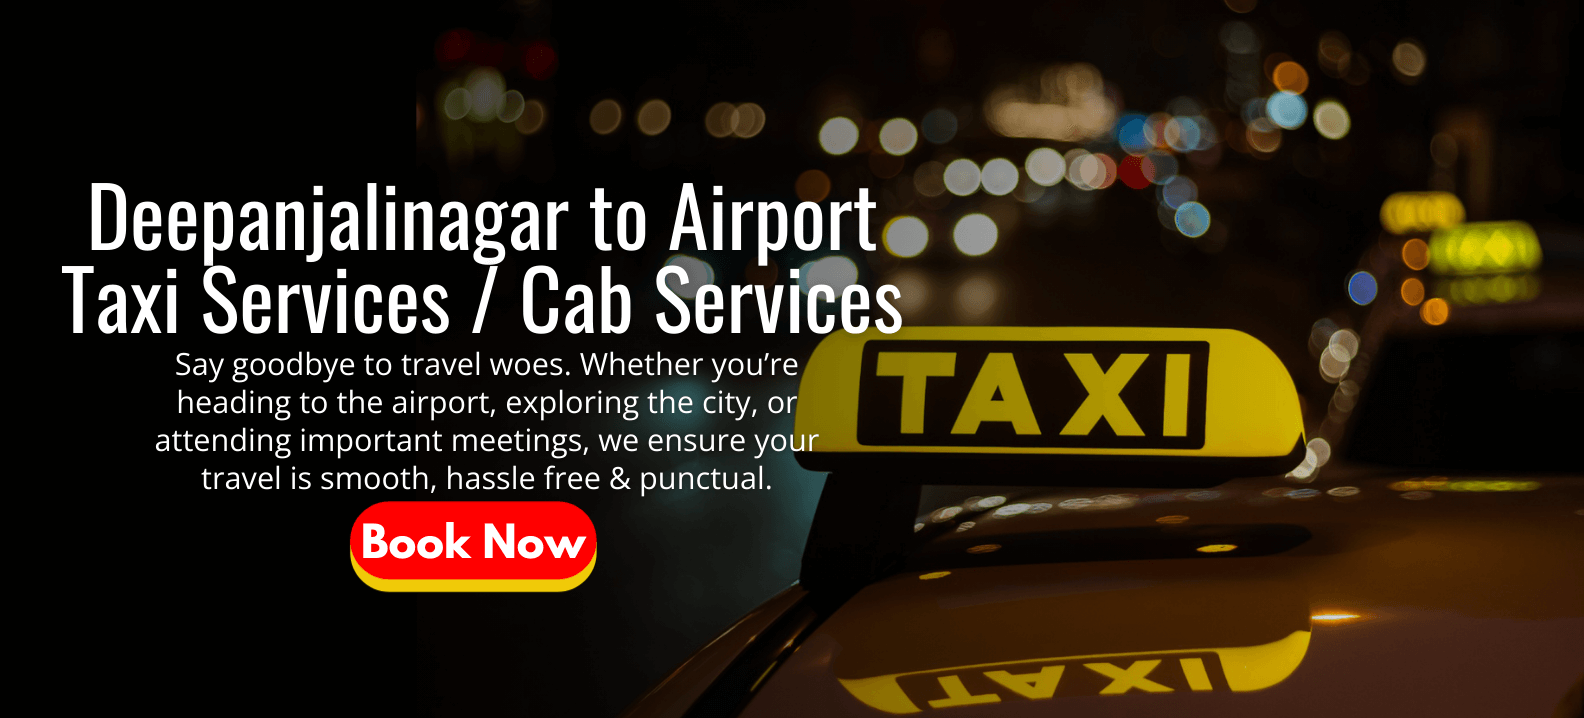 Deepanjalinagar to Airport Taxi Services _ Cab Services